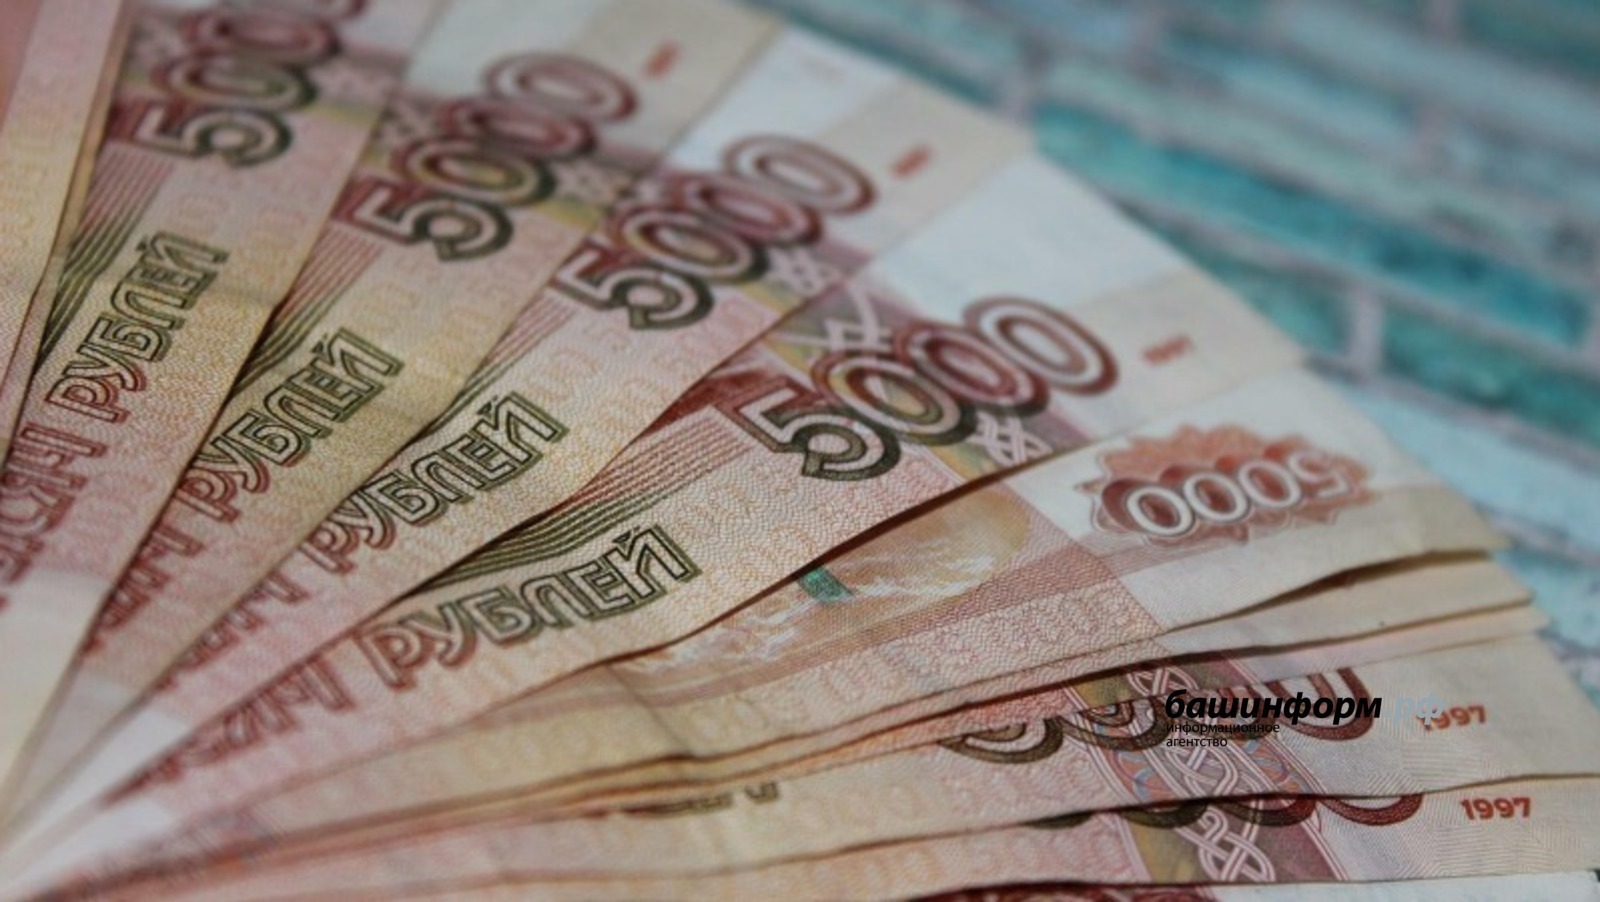 25 молодых учителей из Башкирии получат гранты по 40 тысяч рублей